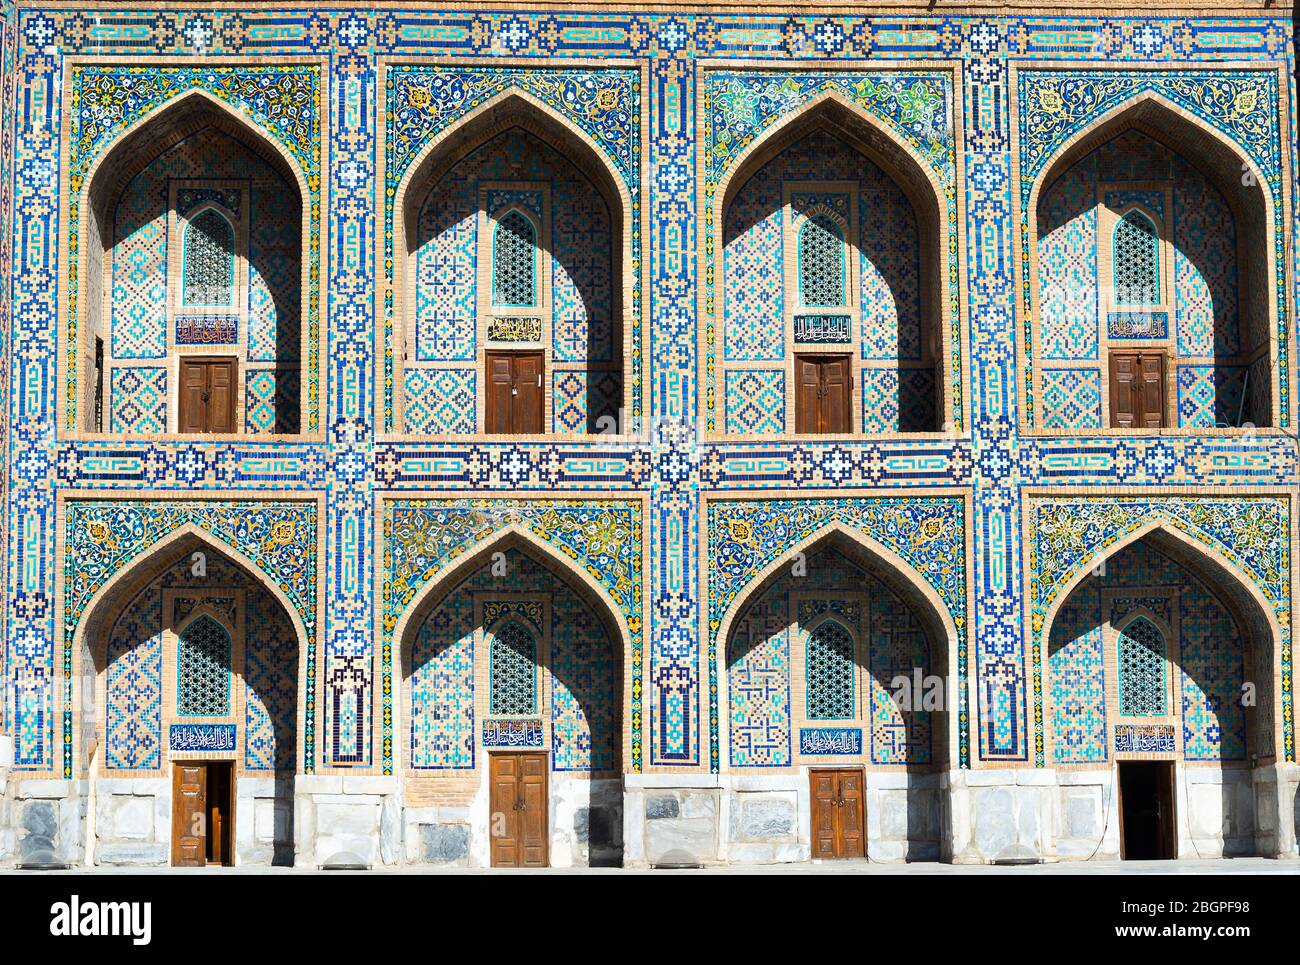 Tilya Kori Madrasah facciata con pishtaq e spandrel con i dettagli ornamentali in Registan, Samarkand, Uzbekistan. Architettura islamica. Foto Stock